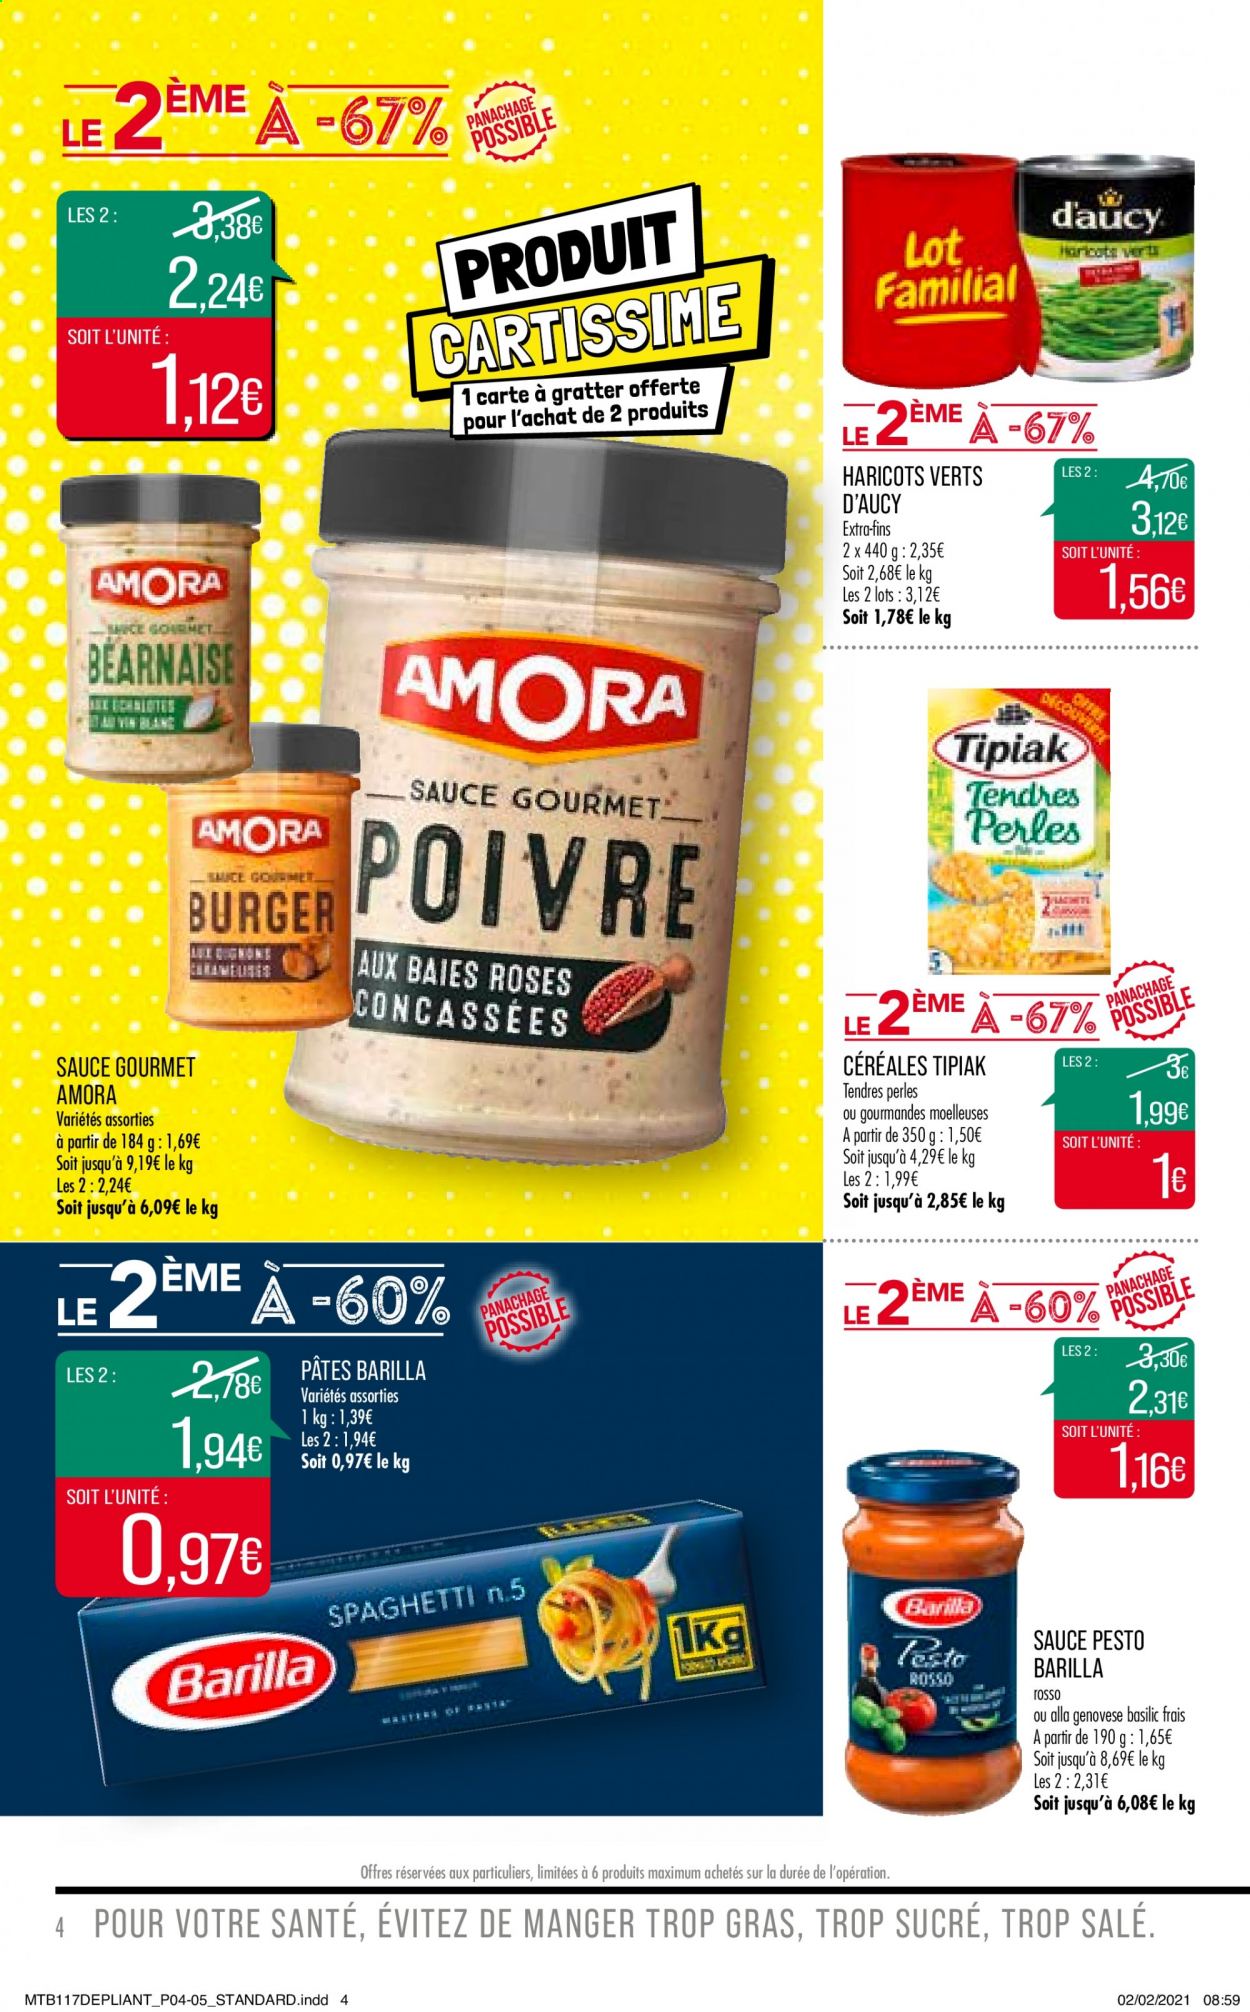 thumbnail - Catalogue Supermarché Match - 23/02/2021 - 07/03/2021 - Produits soldés - Tipiak, haricots, Barilla, céréales, pâtes, basilic, pesto. Page 4.